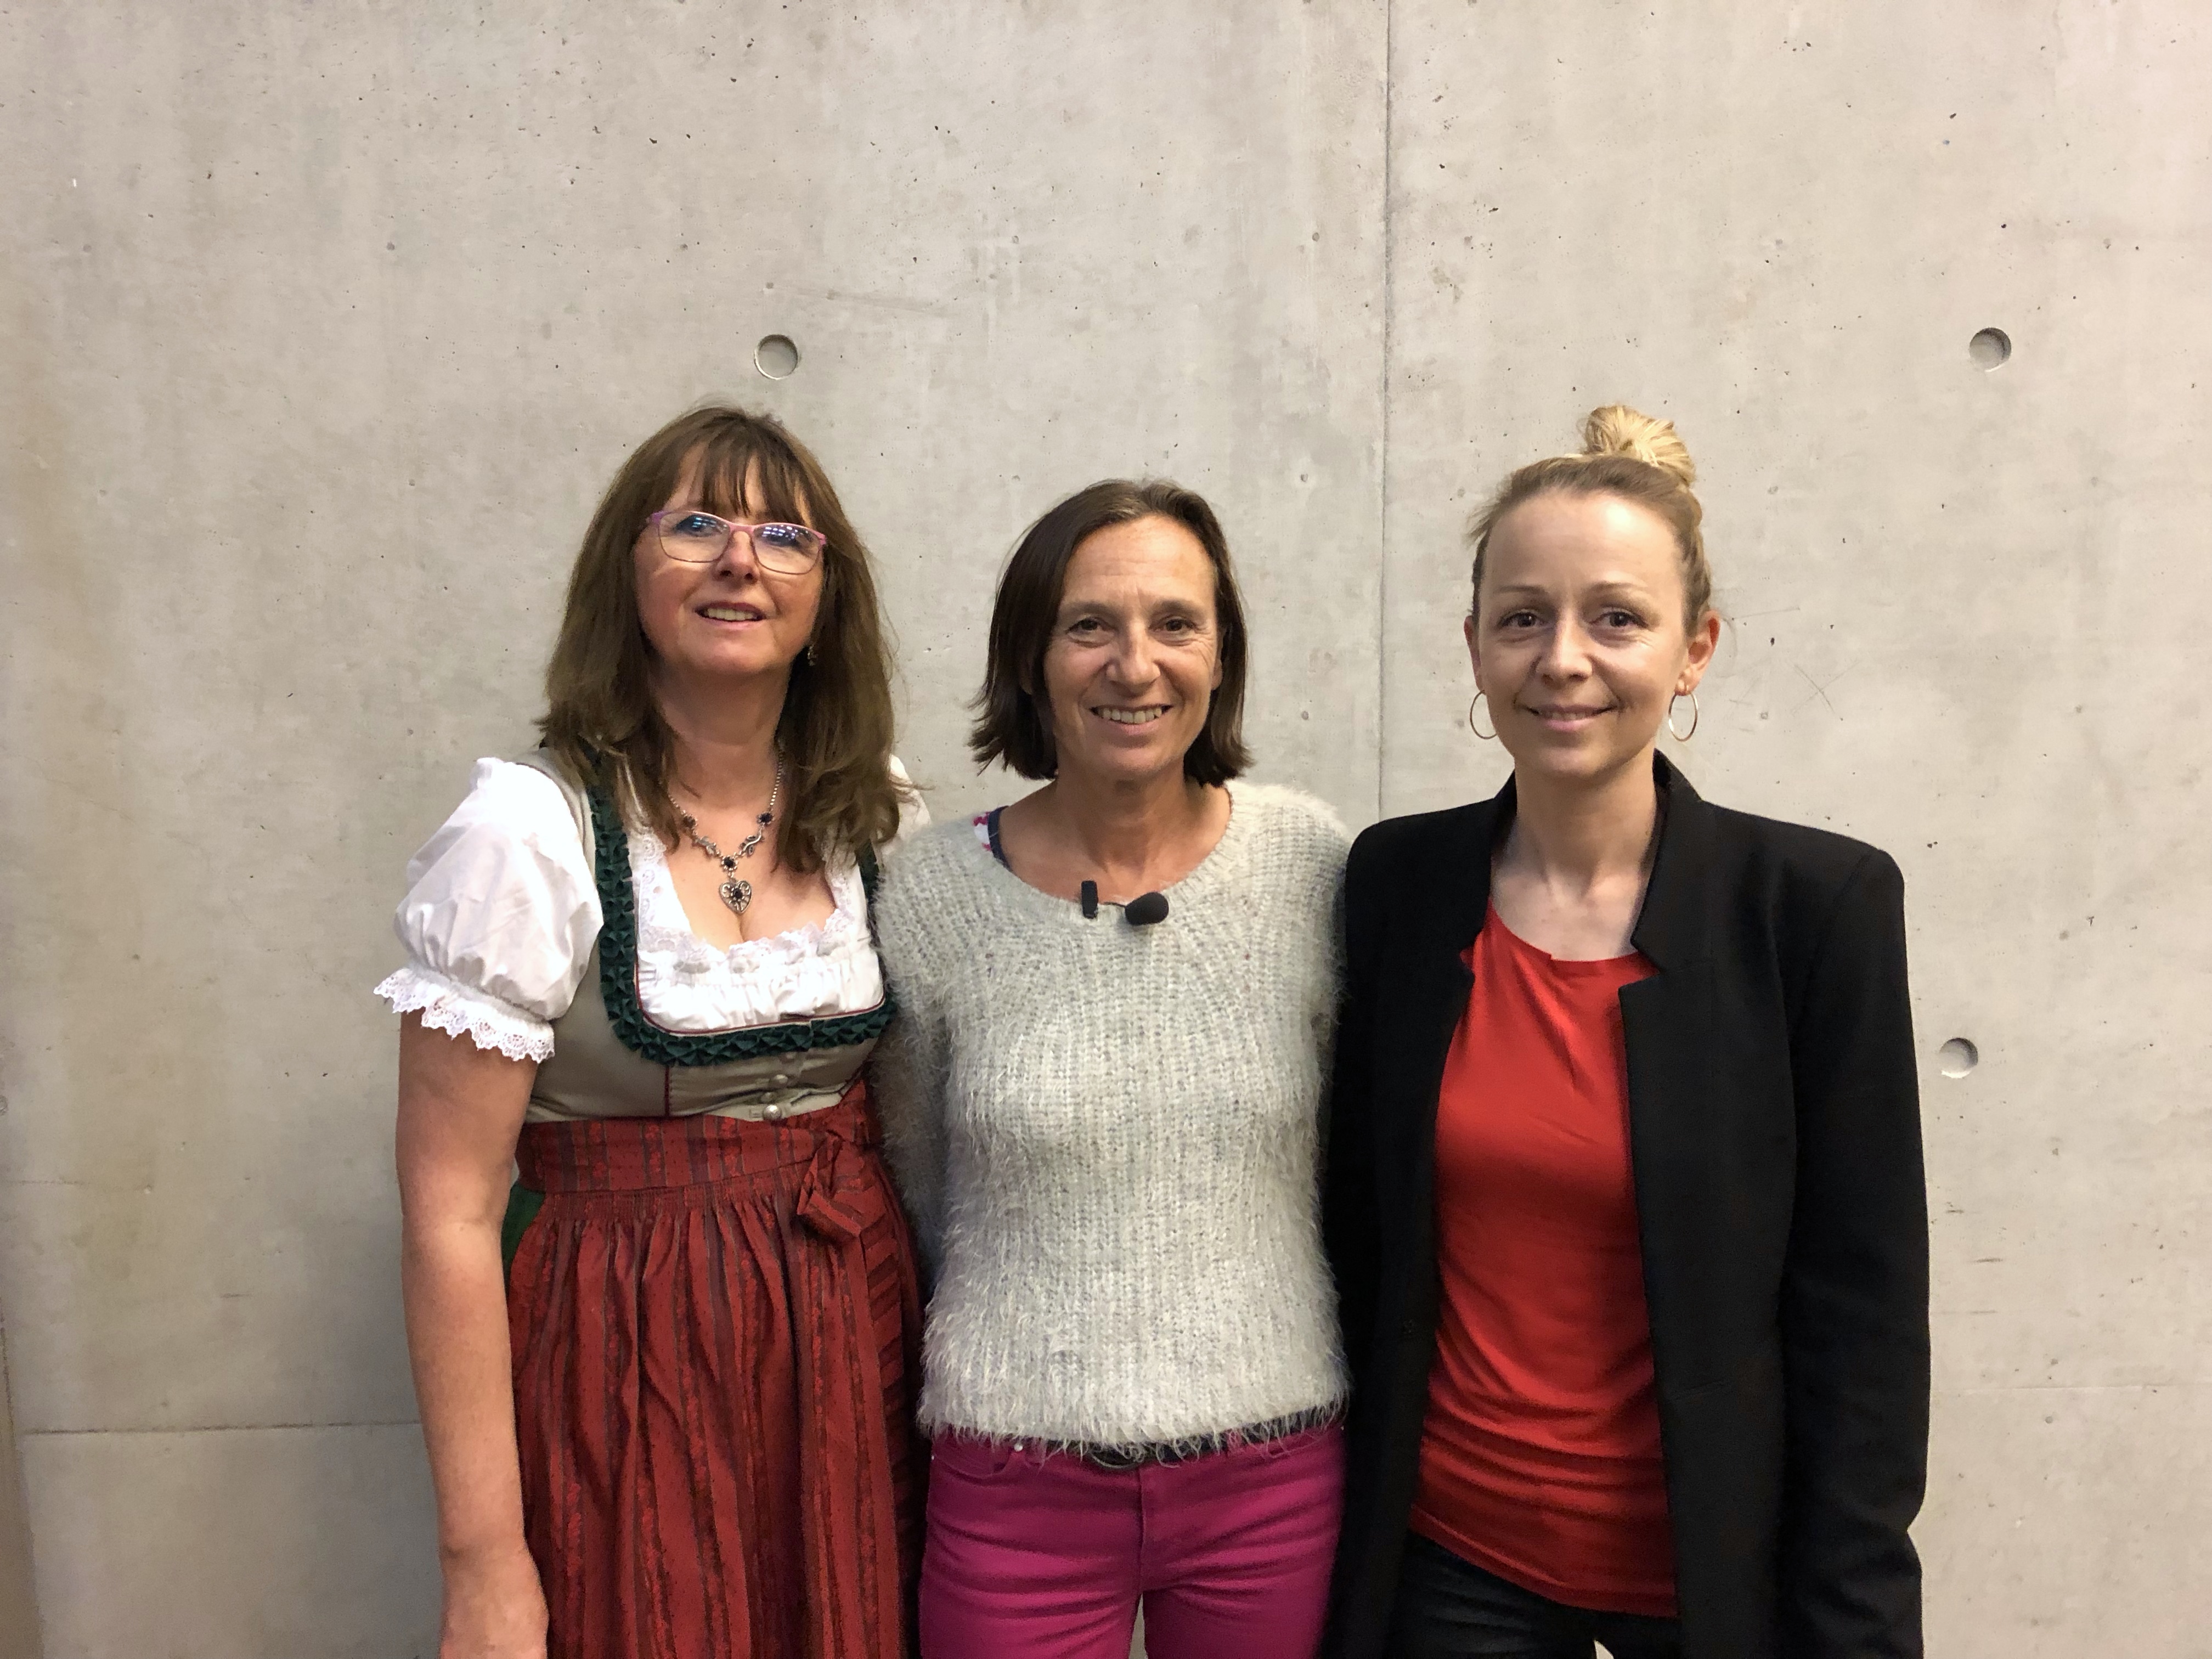 Elisabeth Krenner (stv. Vorsitzende Monitoringausschuss Salzburg), Karin Astegger (Vorsitzende Monitoringausschuss Salzburg), Christine Steger (Vorsitzende Bundesmonitoringausschuss)